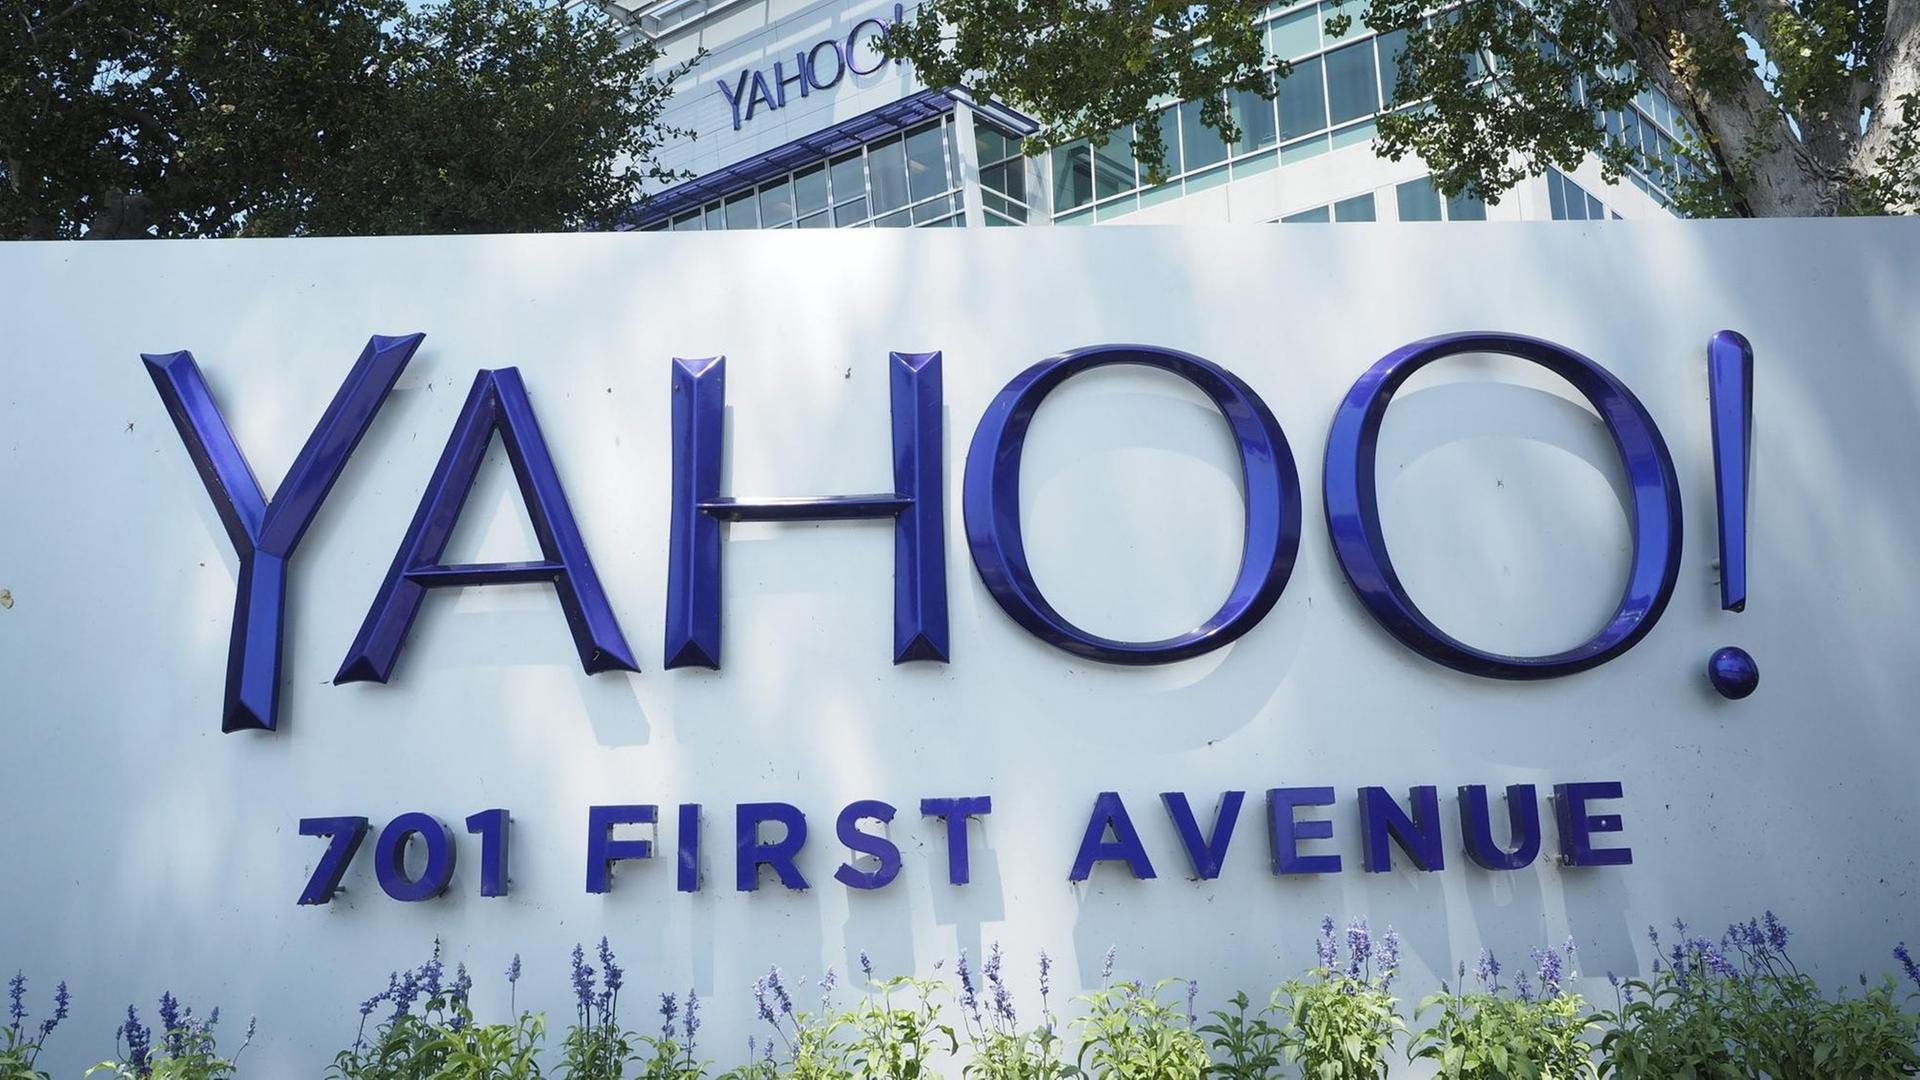 Firmenschild am Yahoo-Hauptsitz in Sunnyvale, Kalifornien